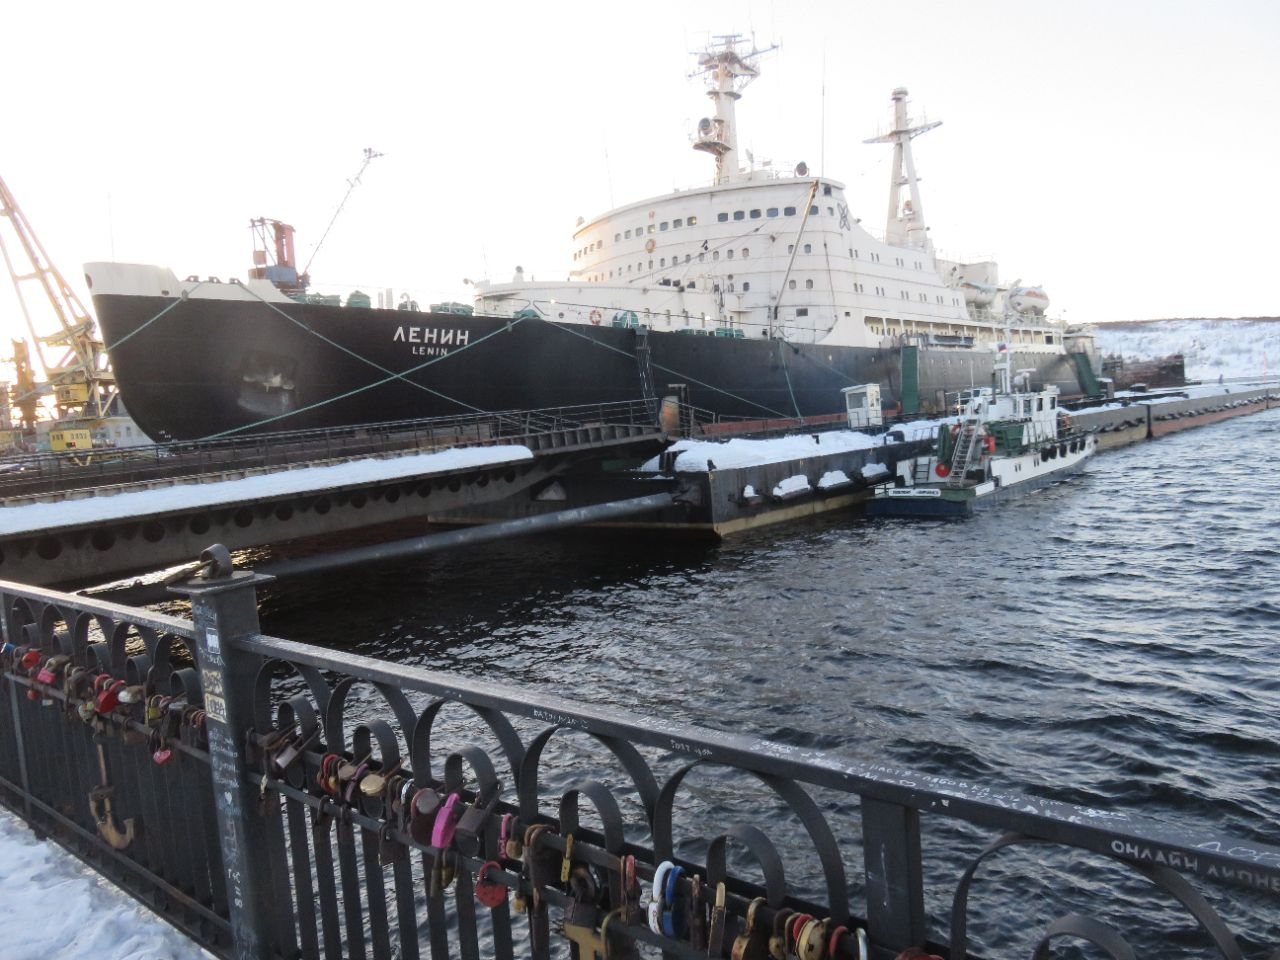 Мурманский морской торговый порт Мурманск, Россия